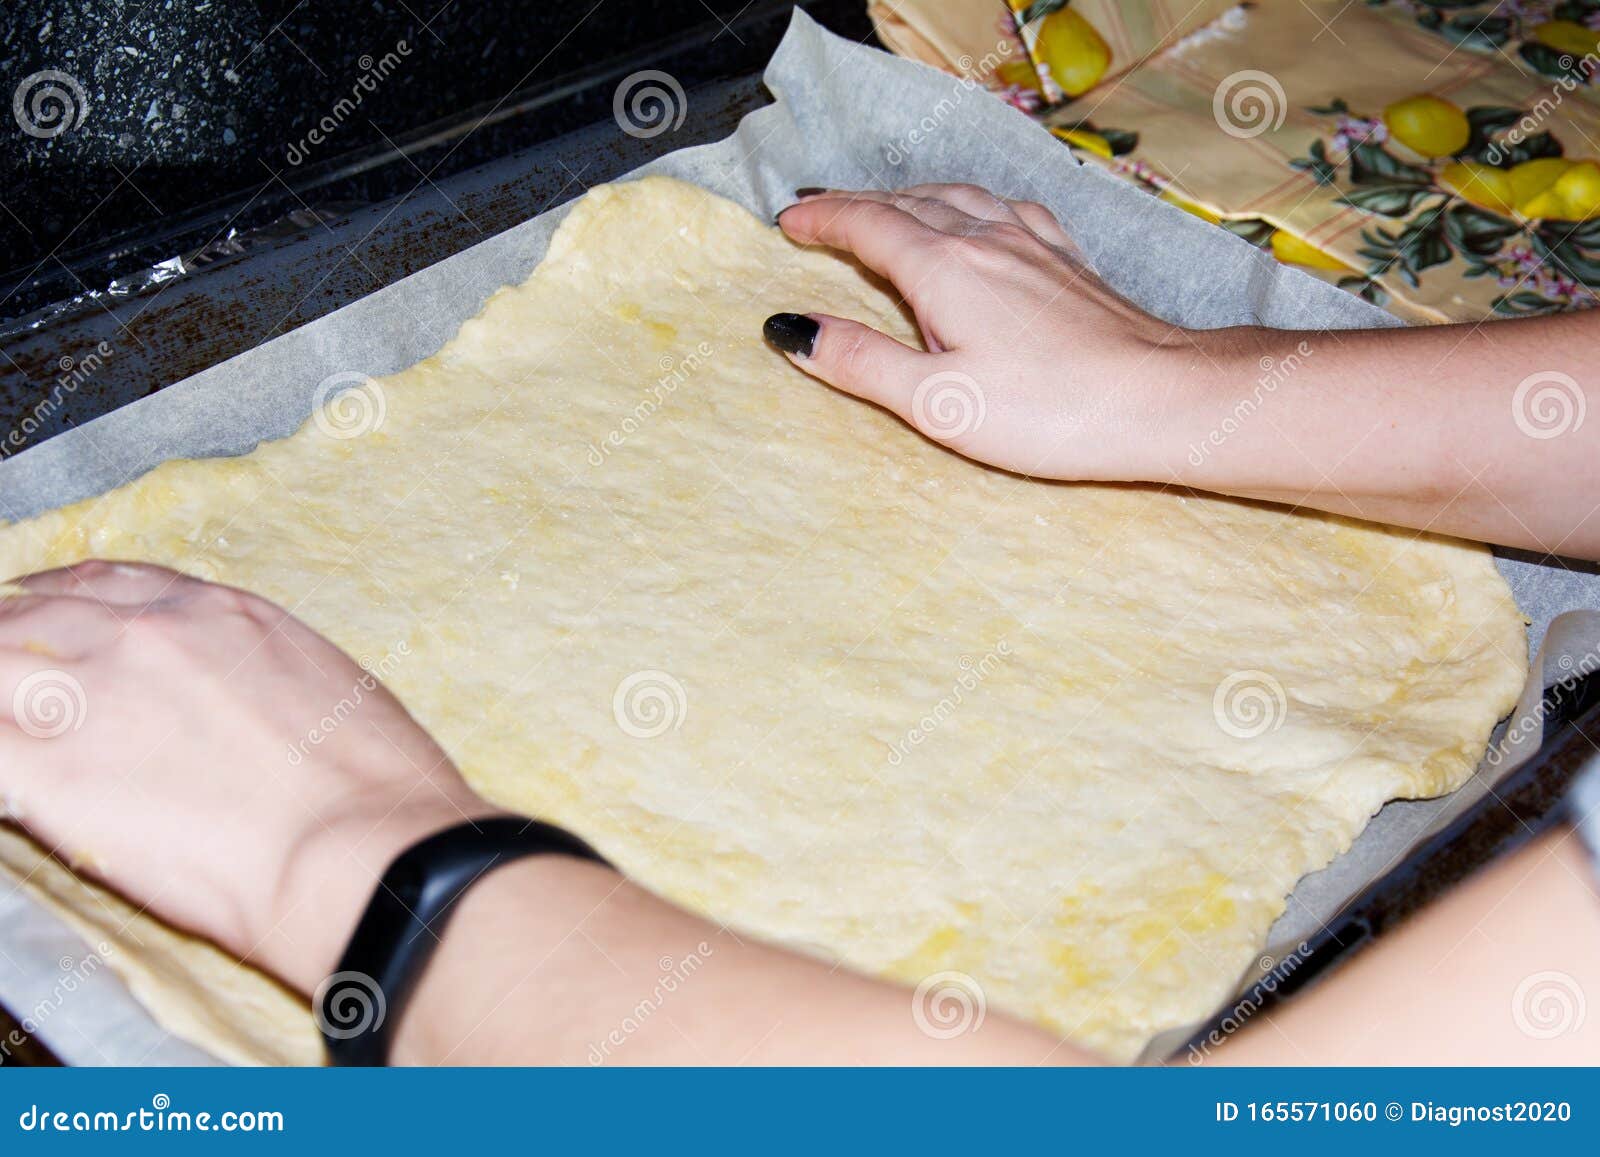 можно ли выпекать на фольге вместо пергаментной бумаги в духовке пиццу фото 53